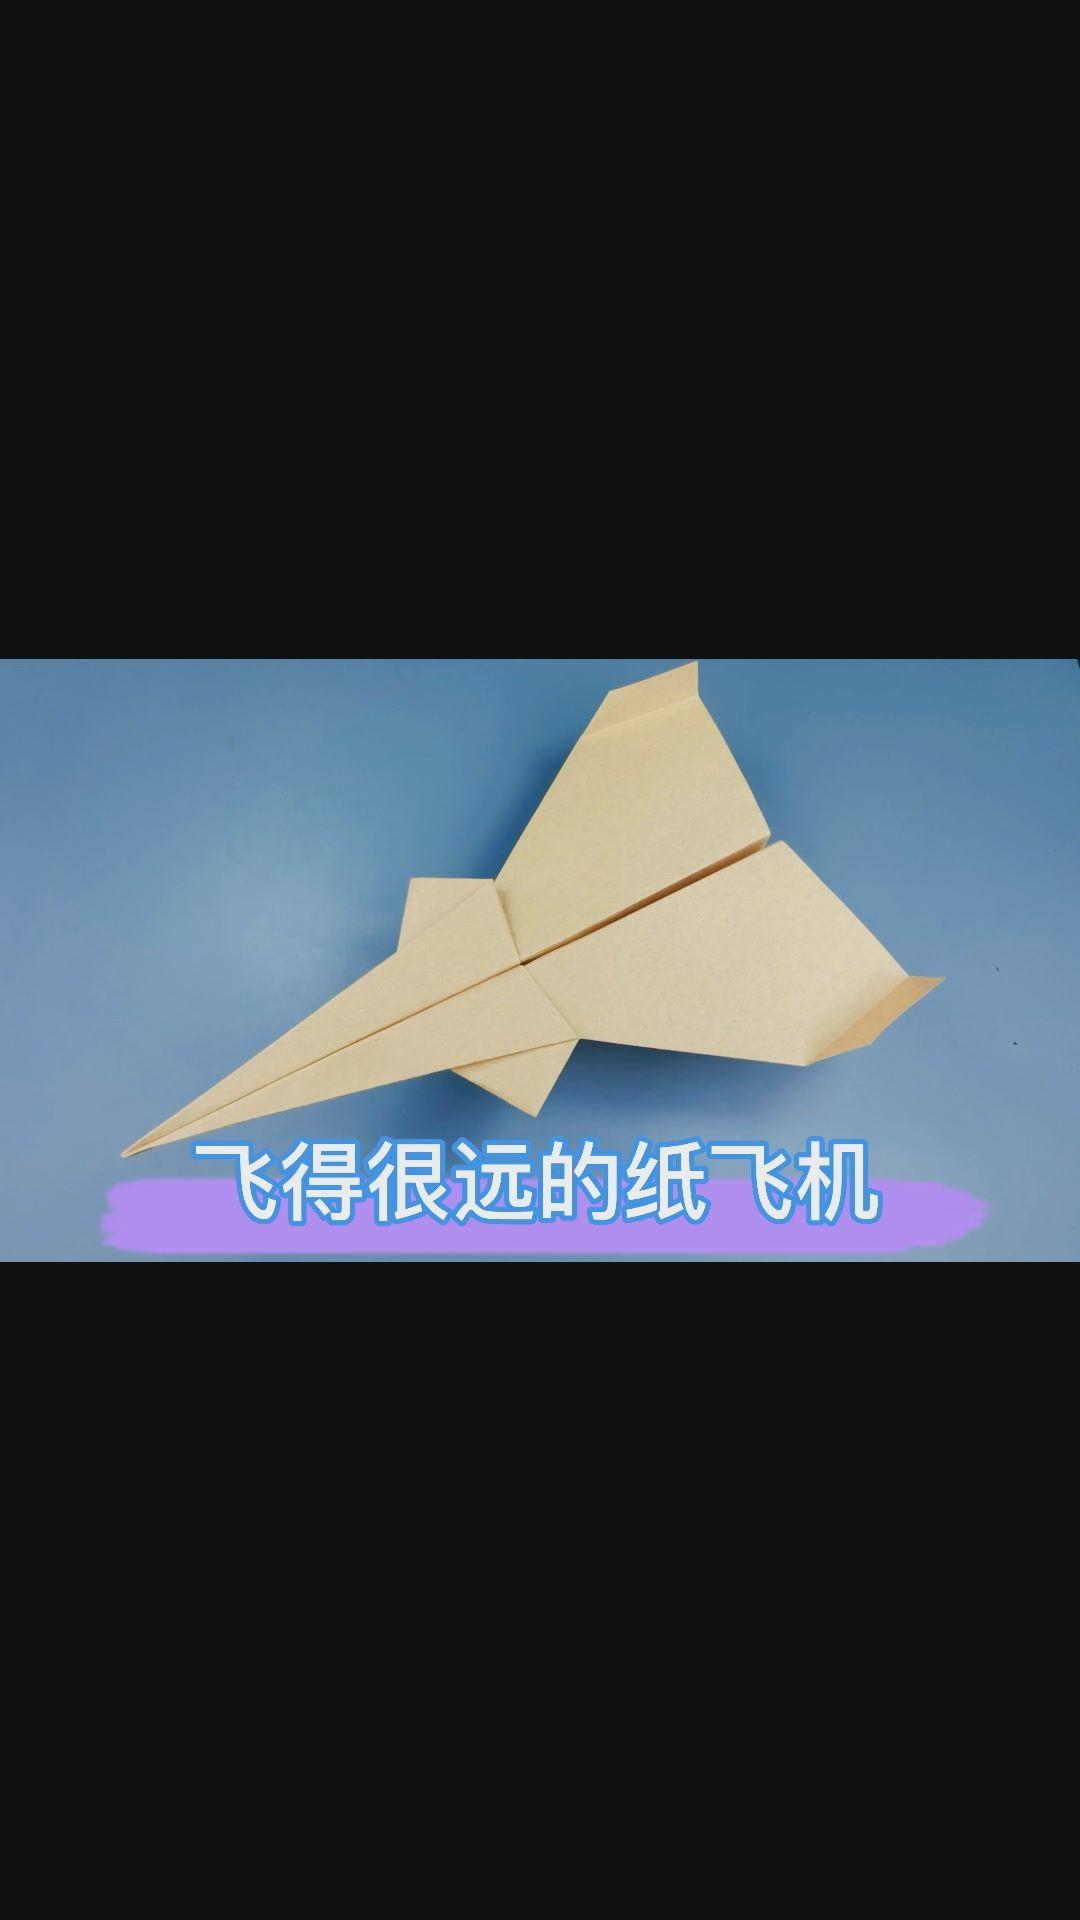 滑翔纸飞机如何折?1张纸搞定!滑翔效果超级棒!